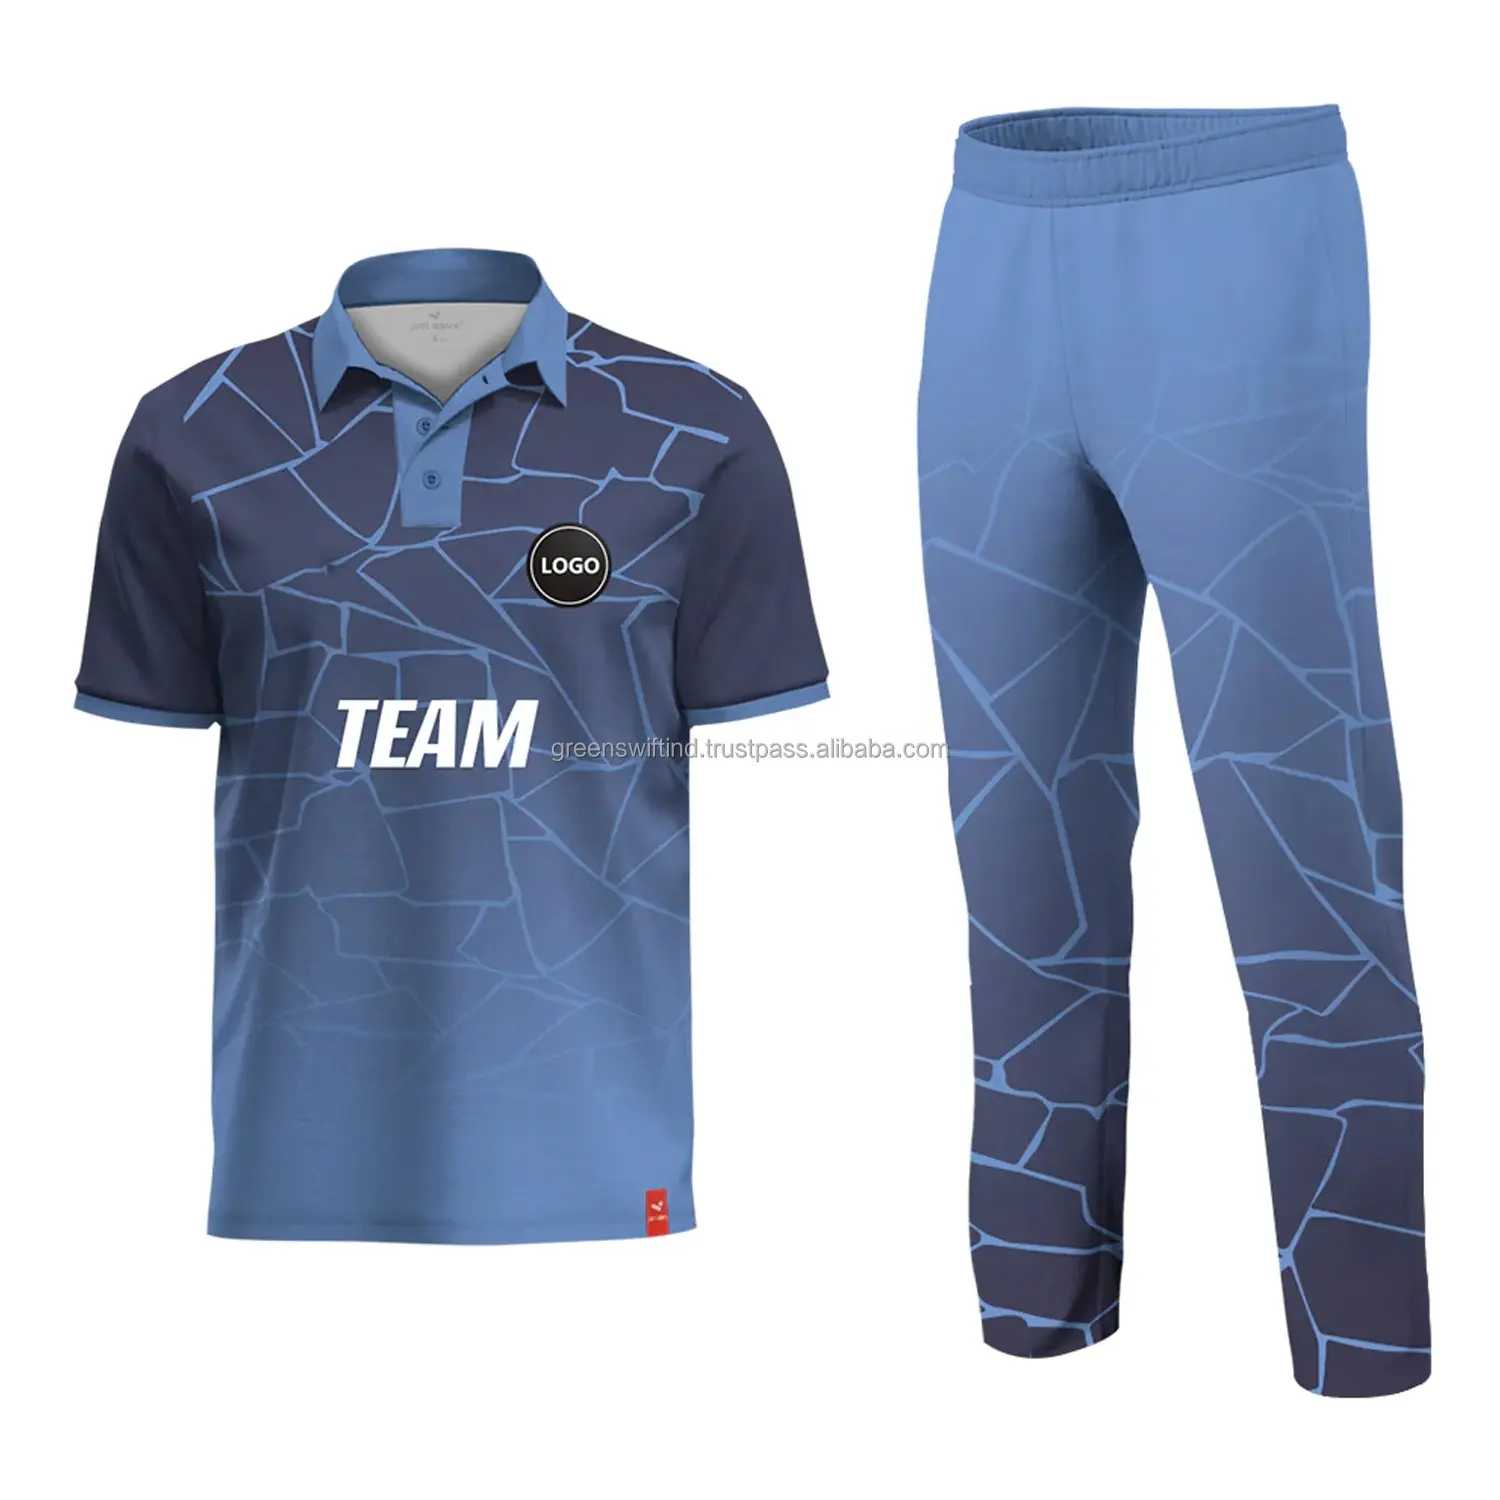 Satış Custom Made kriket forması Set satılık yüksek kalite yeni tasarım yüceltilmiş kriket forması tarafından SPORTZ öğeleri